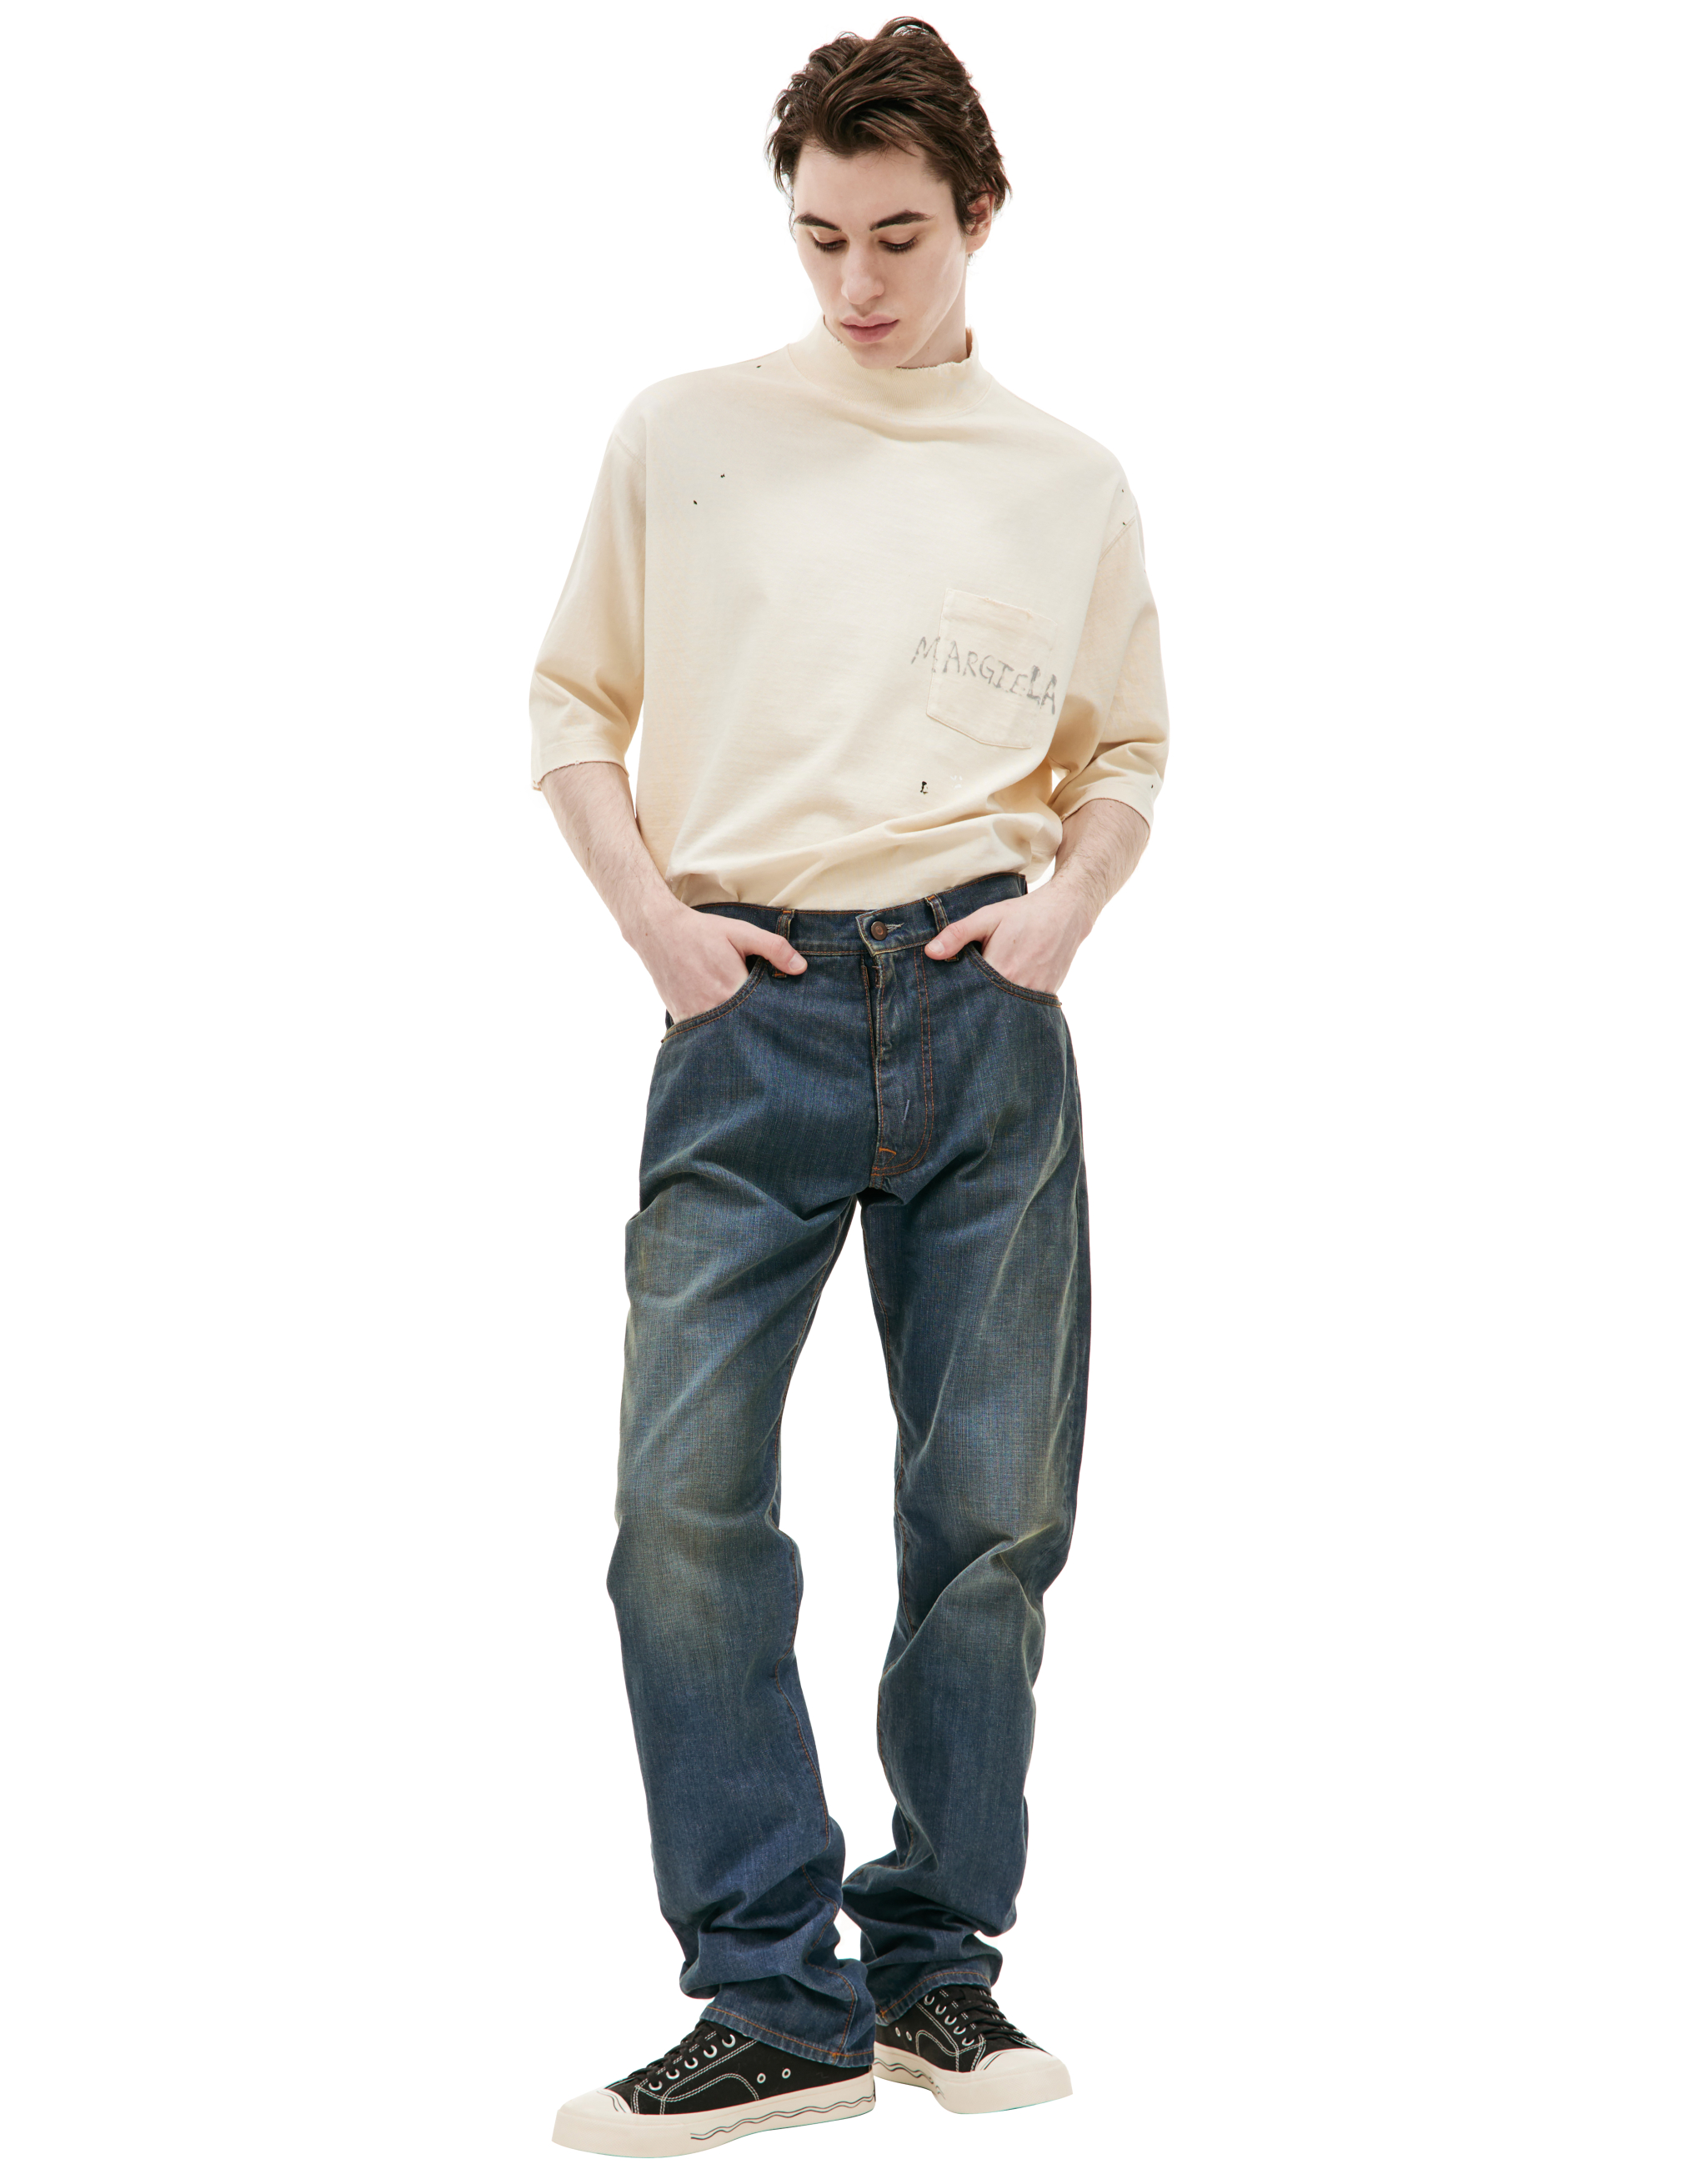 Прямые джинсы с выстиранным эффектом Maison Margiela S50LA0226/S30876/961, размер 29;31;33